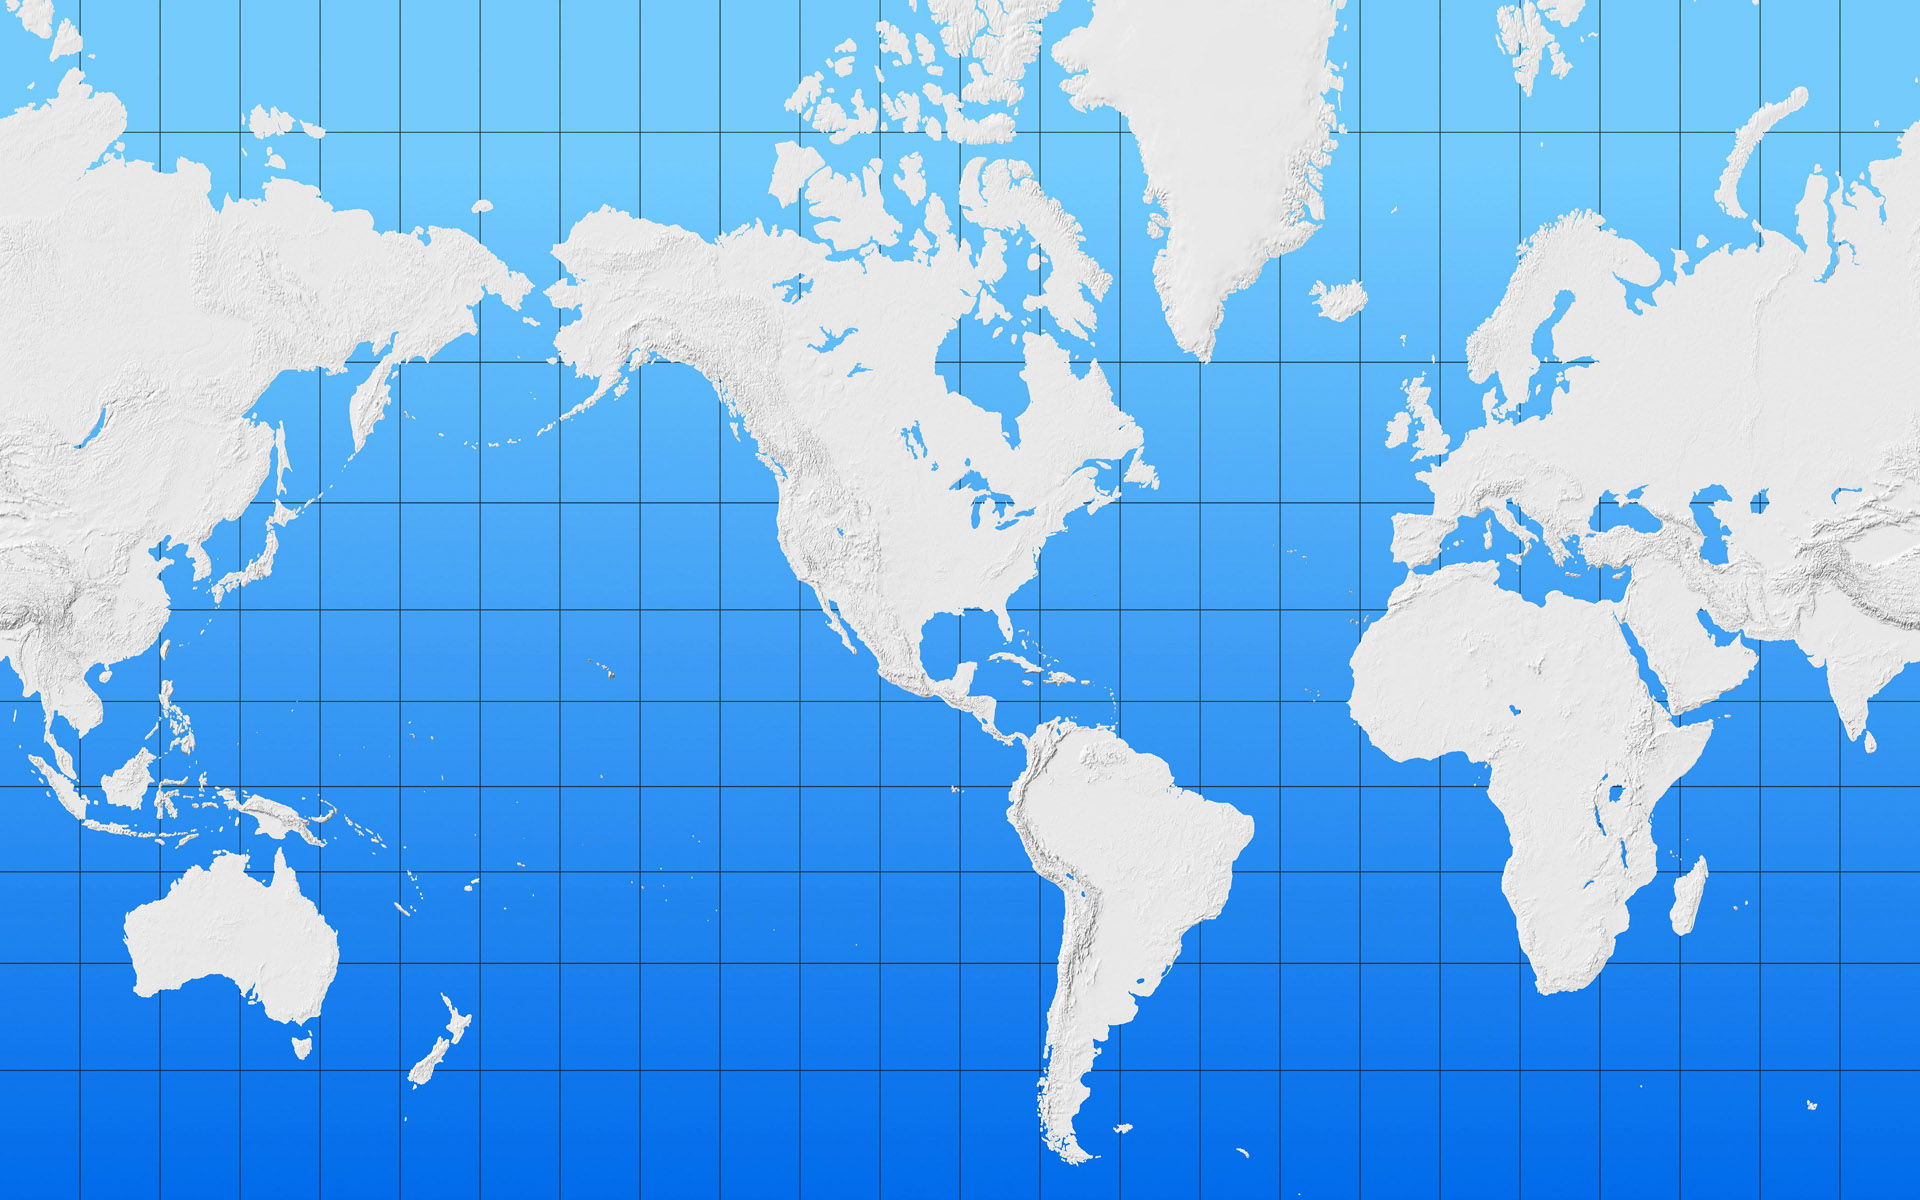 壁纸1920x1200地图 我们的地球壁纸壁纸 地图！我们的地球壁纸壁纸 地图！我们的地球壁纸图片 地图！我们的地球壁纸素材 创意壁纸 创意图库 创意图片素材桌面壁纸